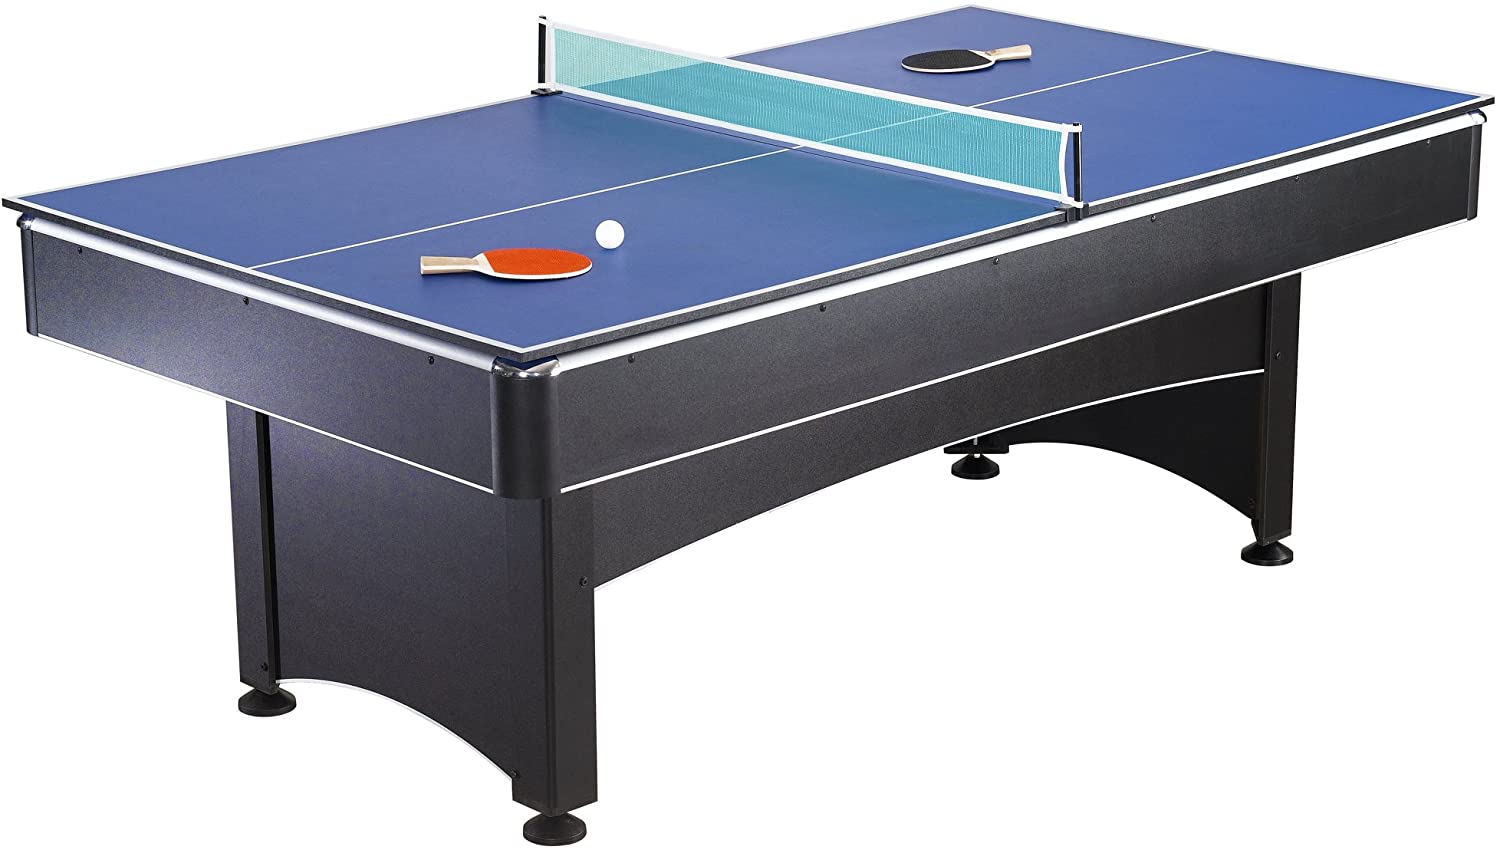 7 Foot Pool Table with Table Tennis Top  #SA712